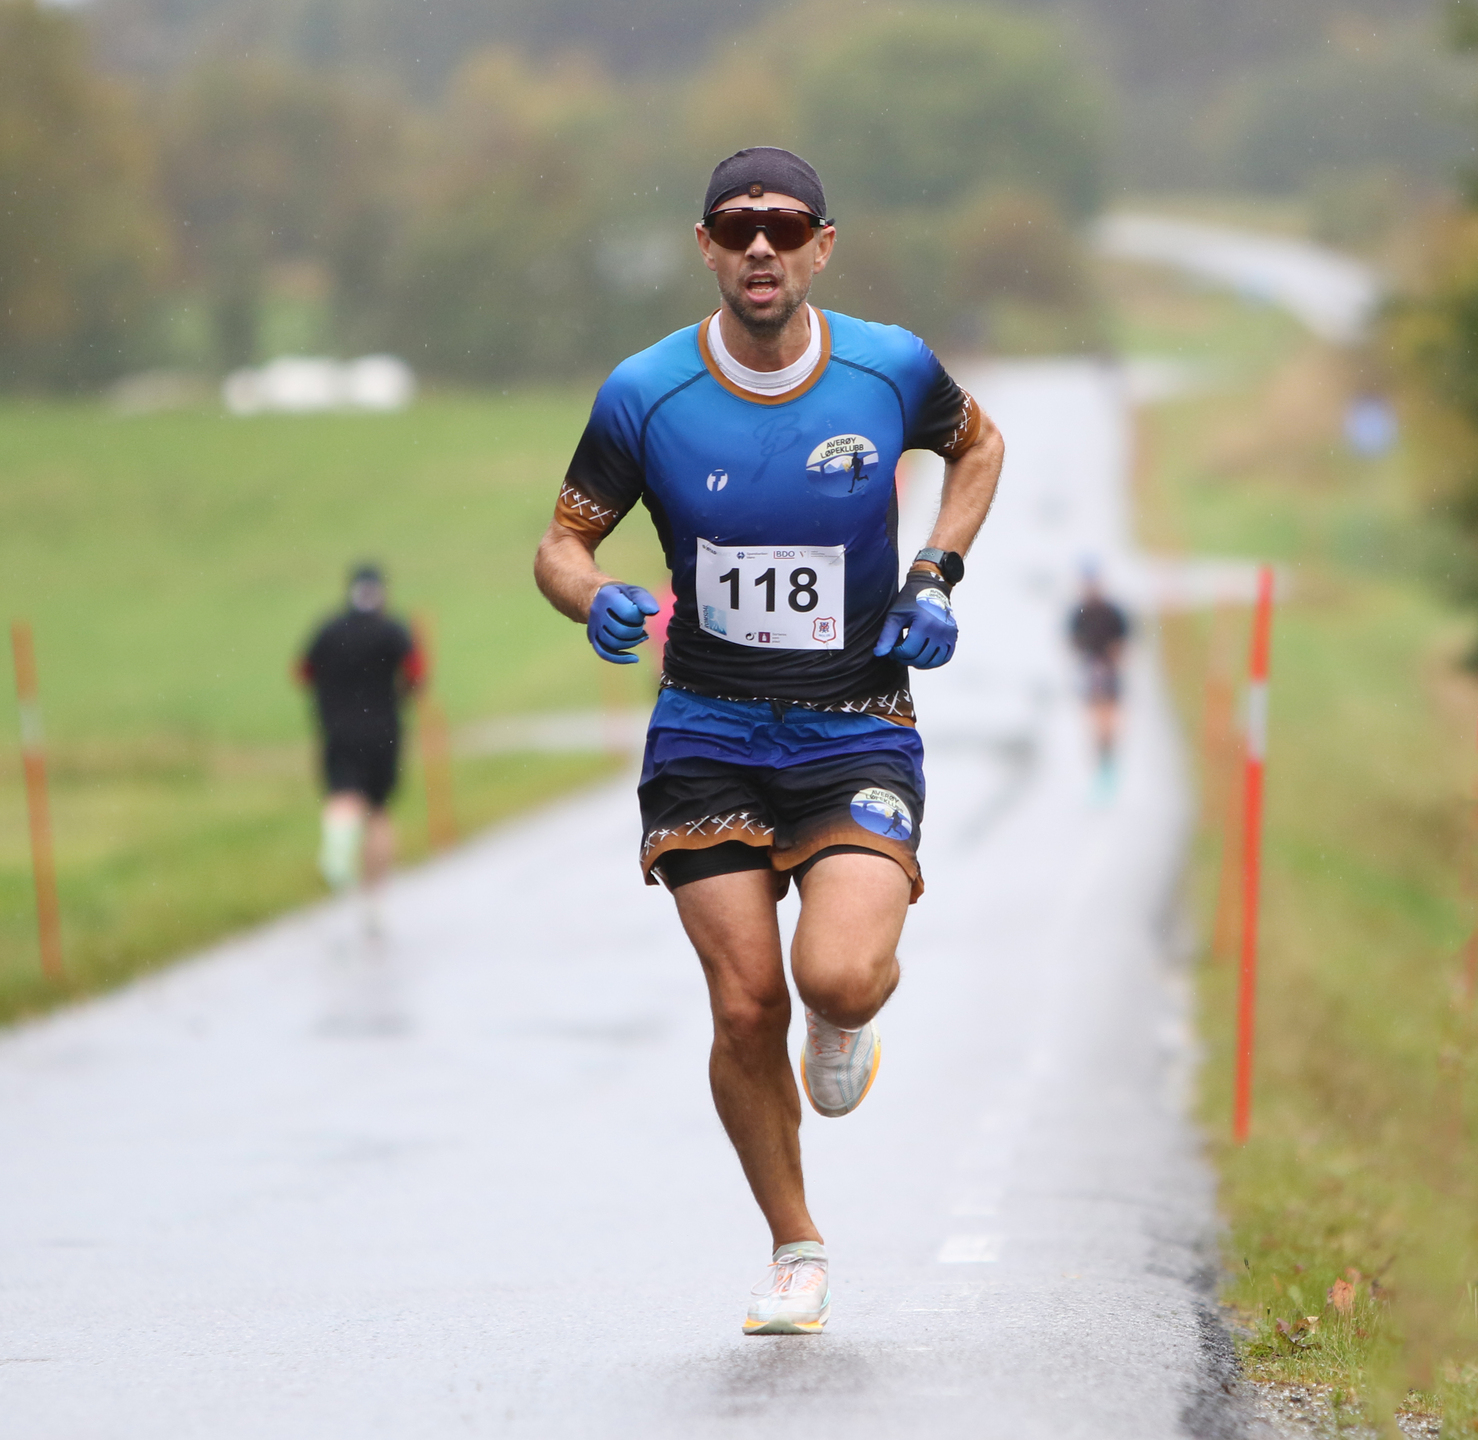 Vinner halvmaraton Morten Eilifsen.jpg